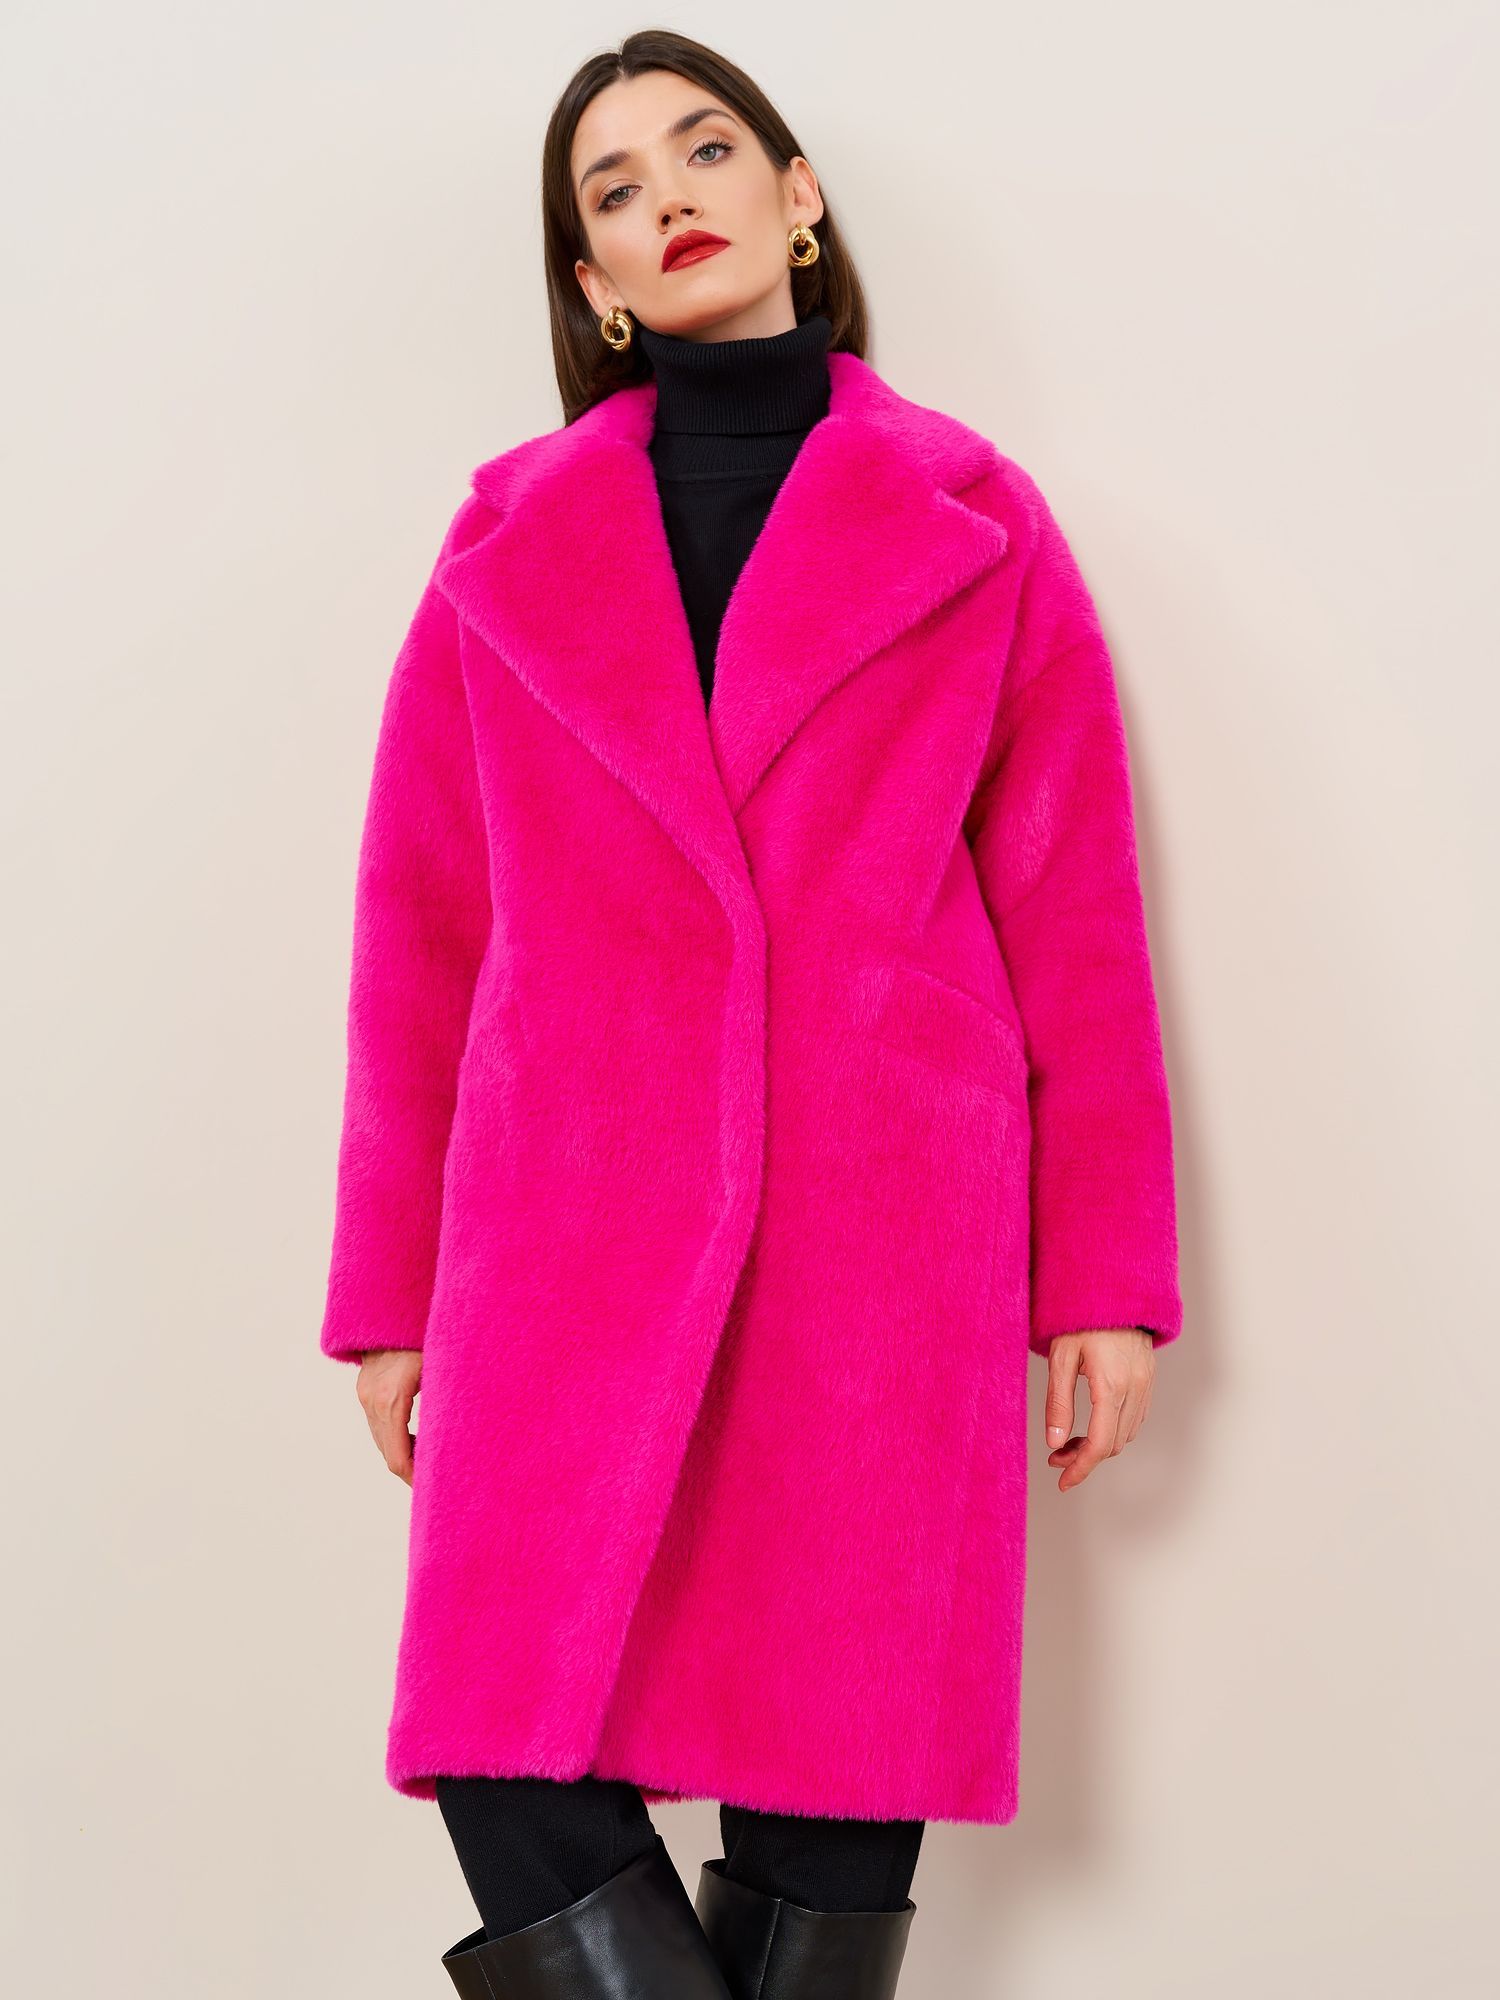 Пальто женское Viaville РТ41W розовое 44-46 RU